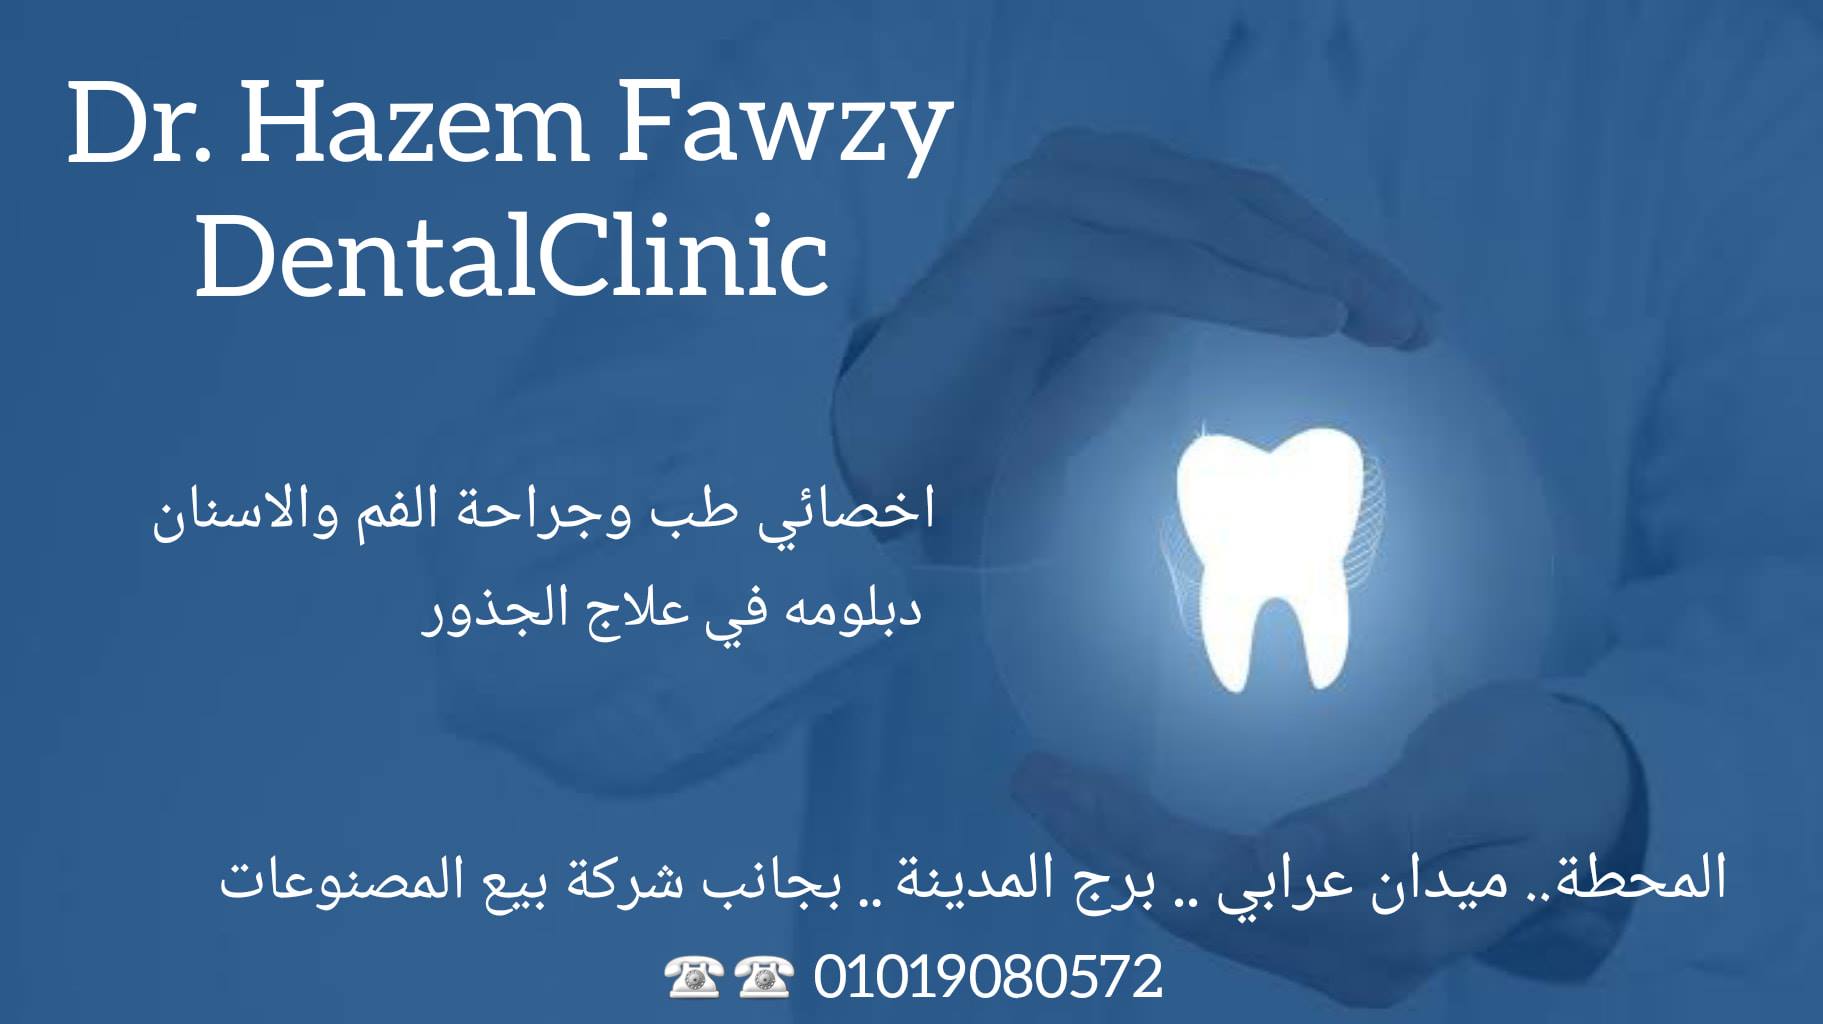 غلاف دكتور حازم فوزى لجراحة الفم والاسنان وعلاج الجذور  Hazem Fawzy Dental clinic